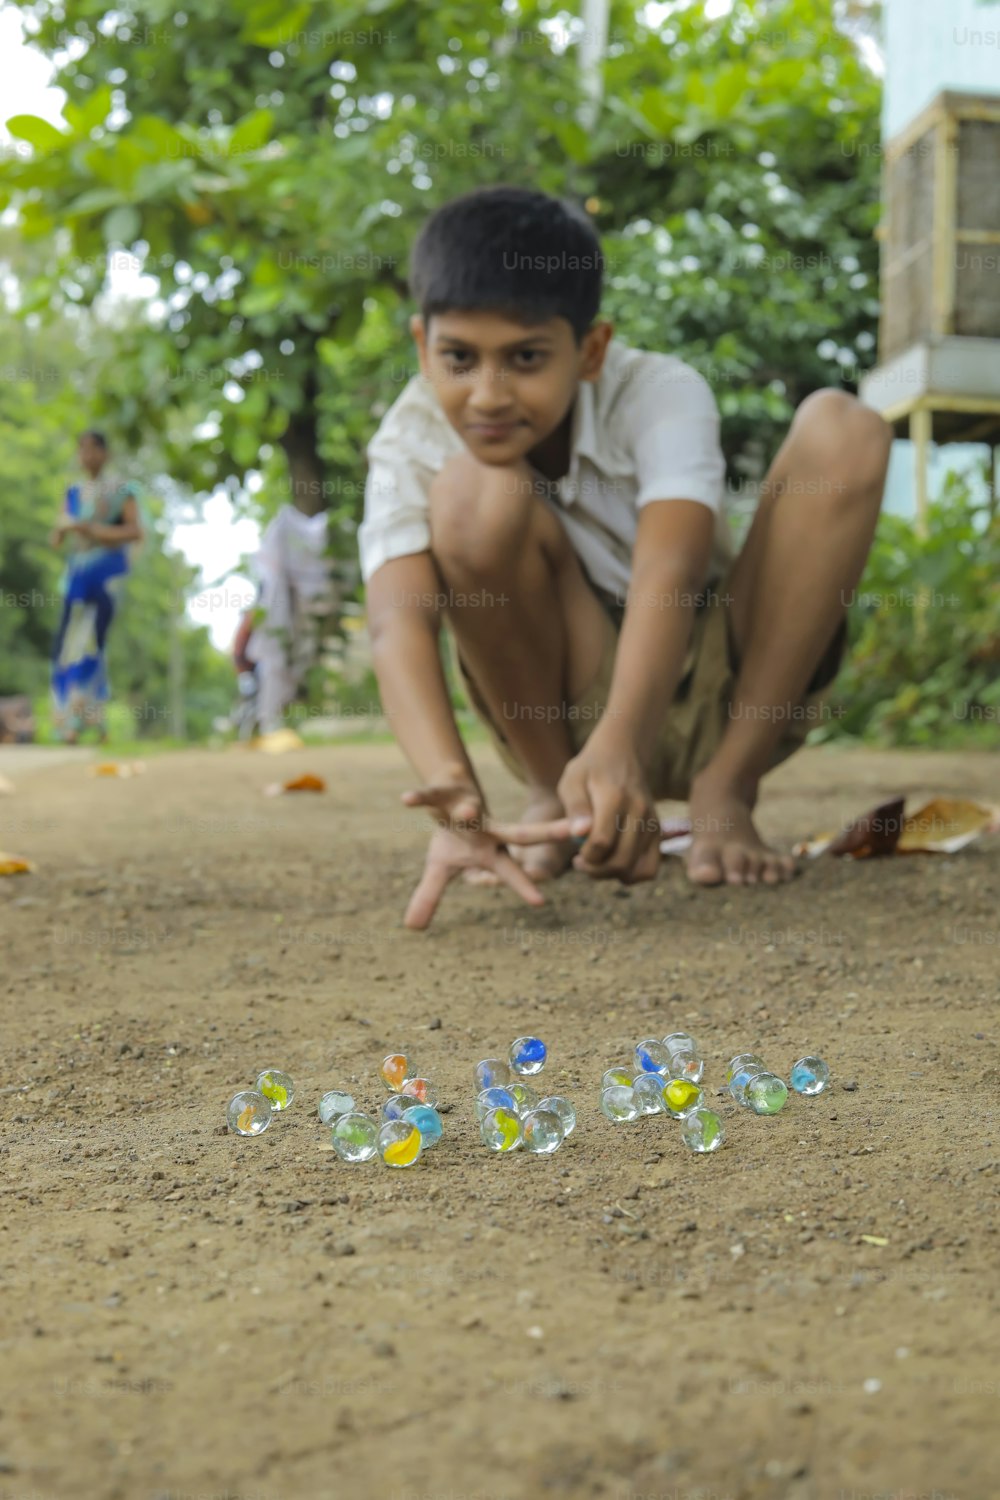 오래된 인도 마을 게임인 유리 구슬을 가지고 노는 인도 어린이. 유리 구슬은 힌디어로 Kancha라고도합니다.